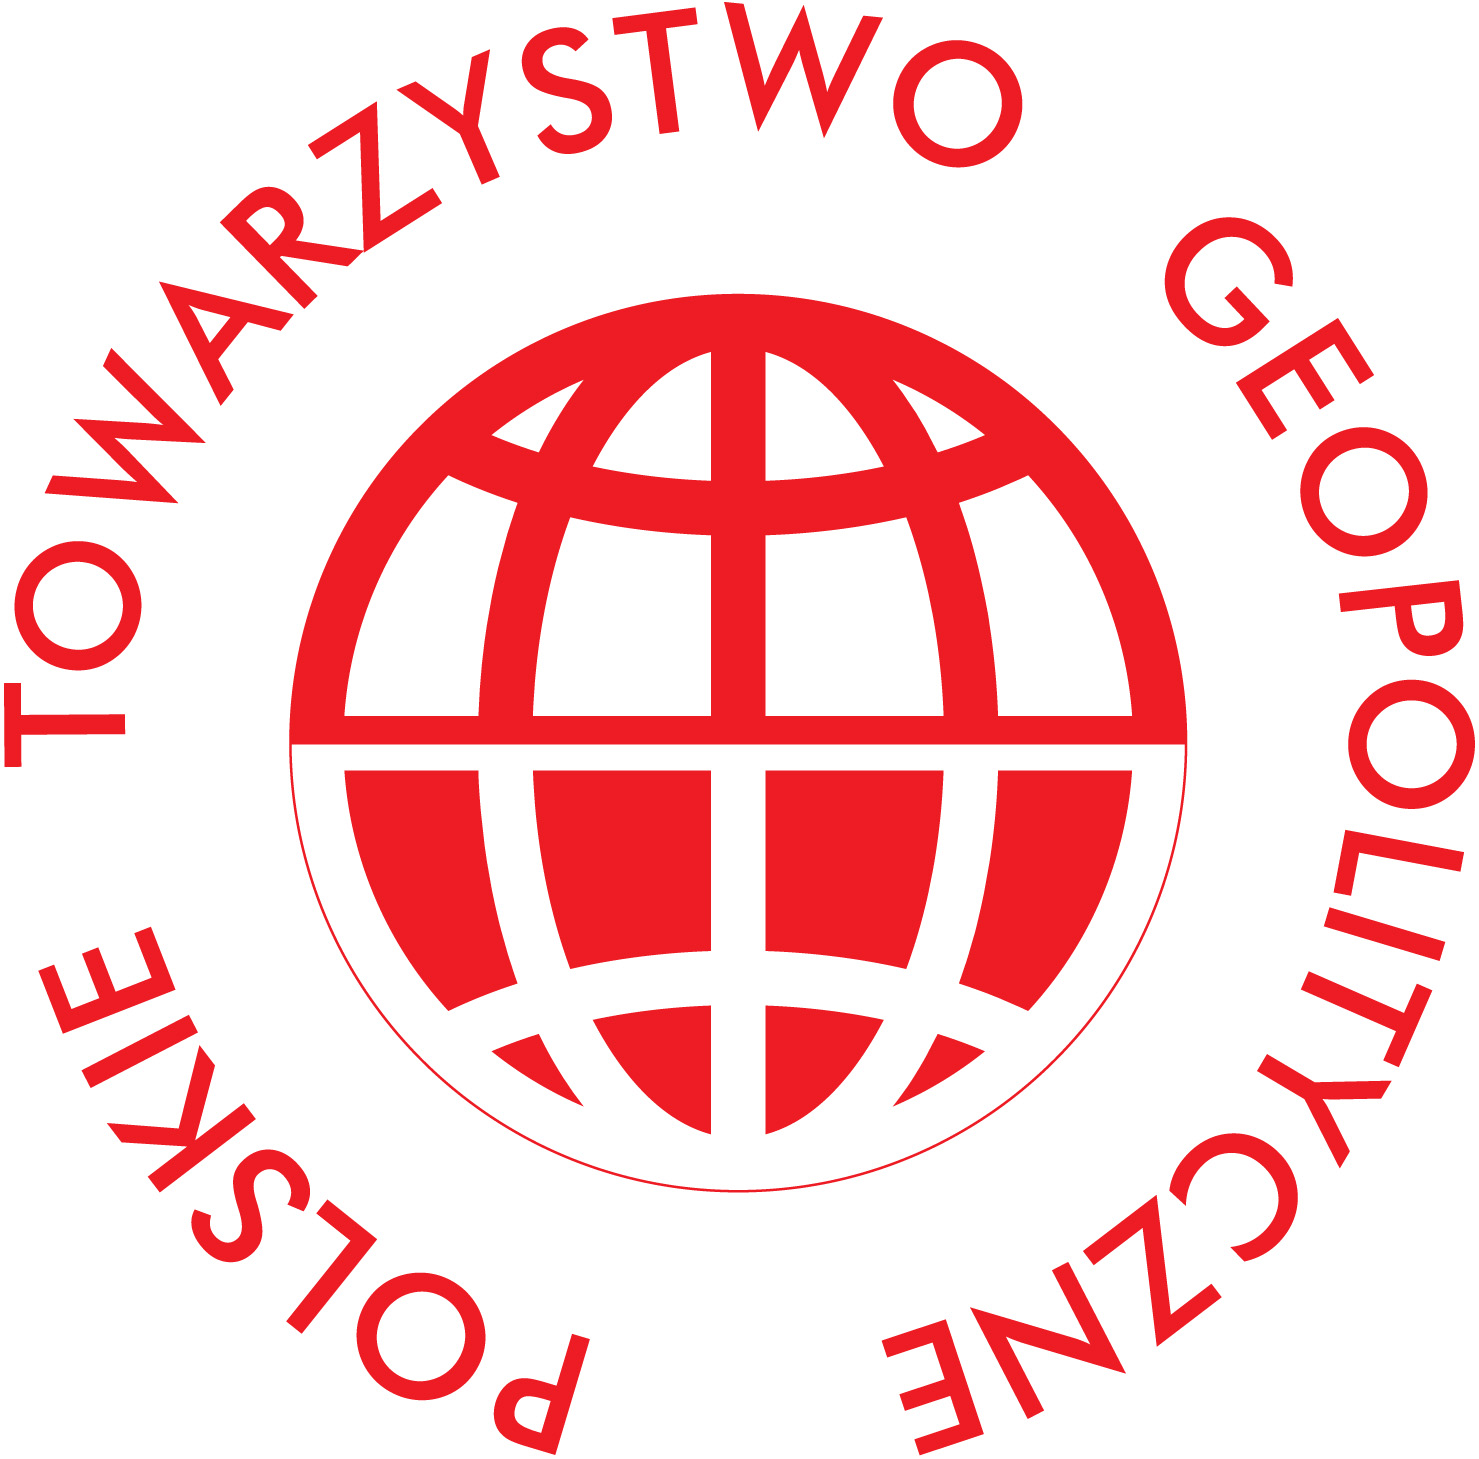 Nowe władze Polskiego Towarzystwa Geopolitycznego